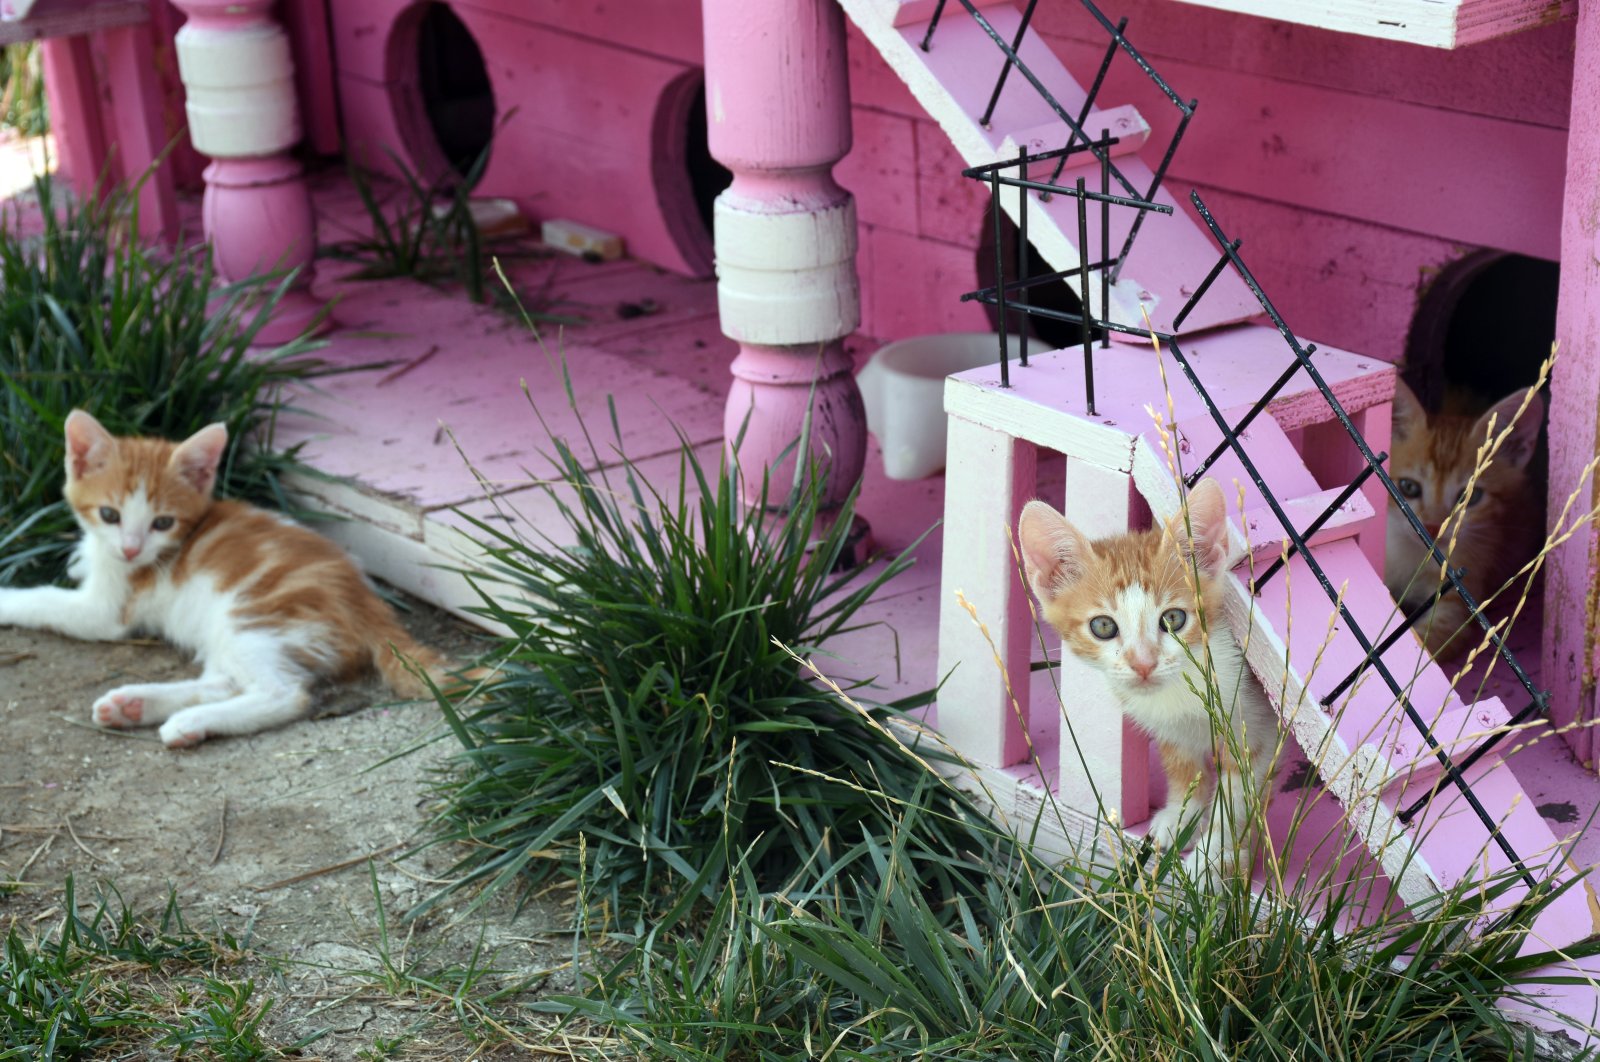 Desa kucing di pusat kota Turki melayani kucing yang membutuhkan